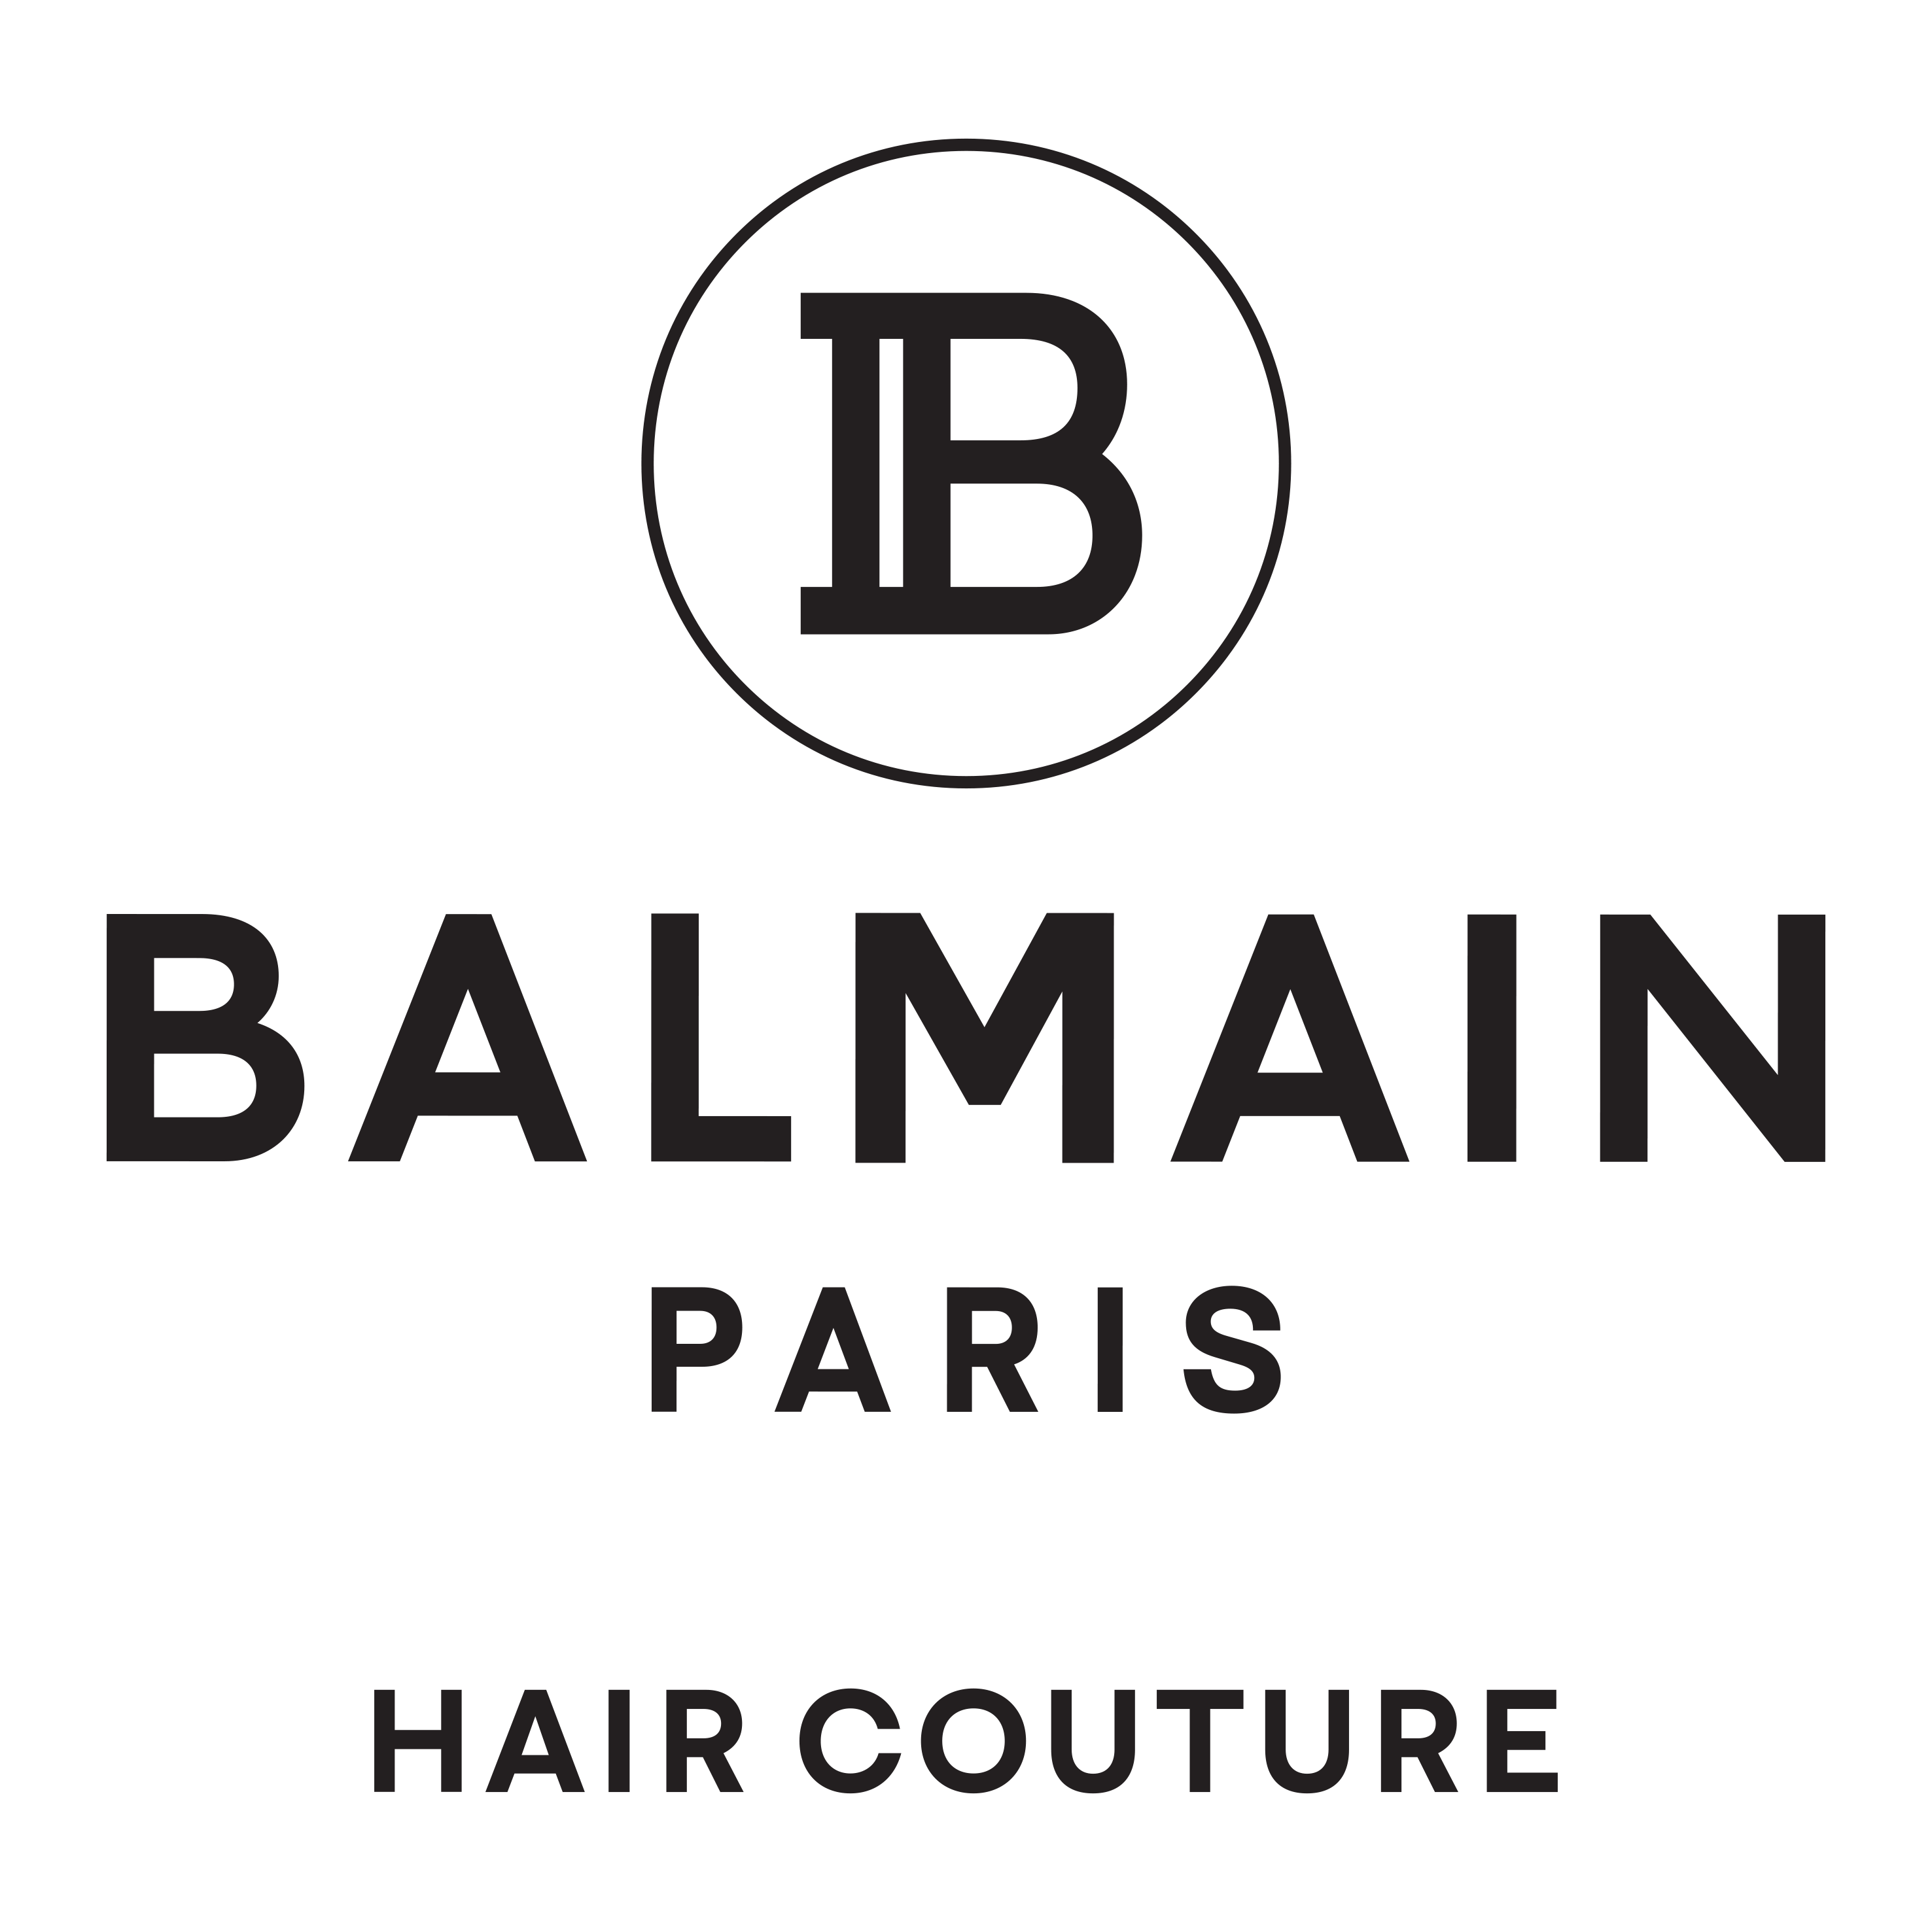 BalmainHair_LOGO_B_BalmainParis_HairCouture